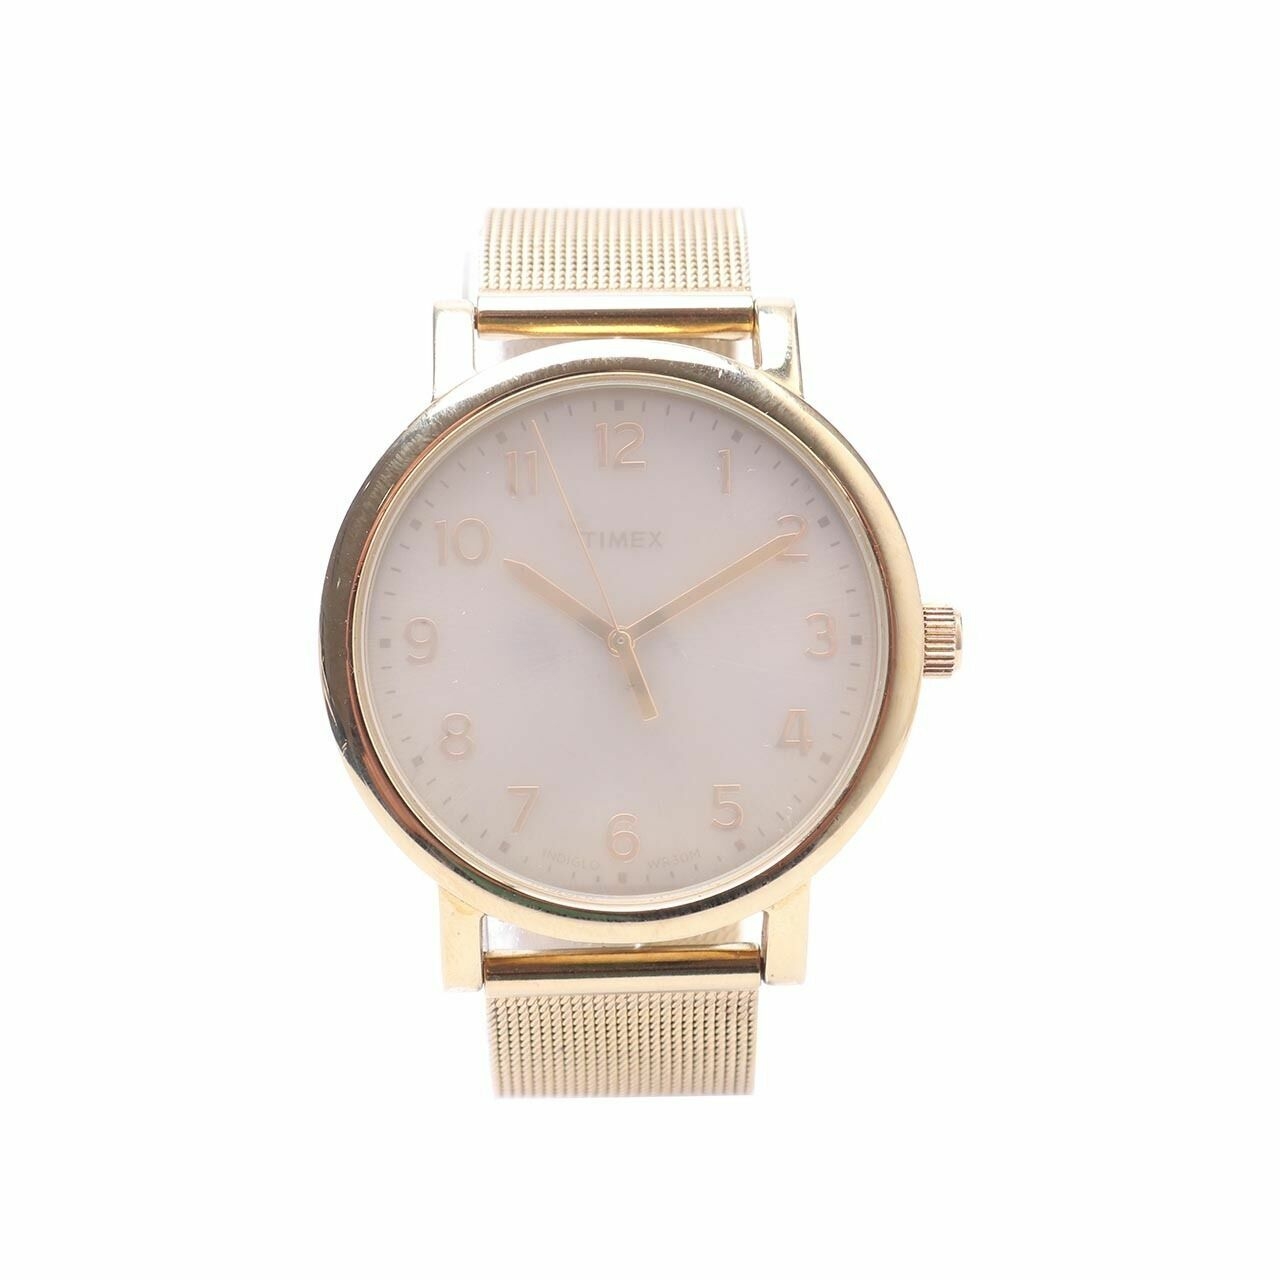 Timex Gold Watch